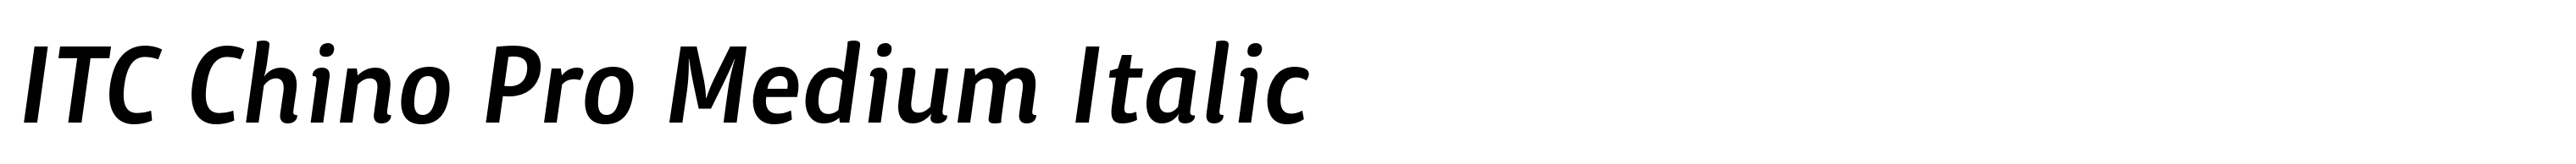 ITC Chino Pro Medium Italic